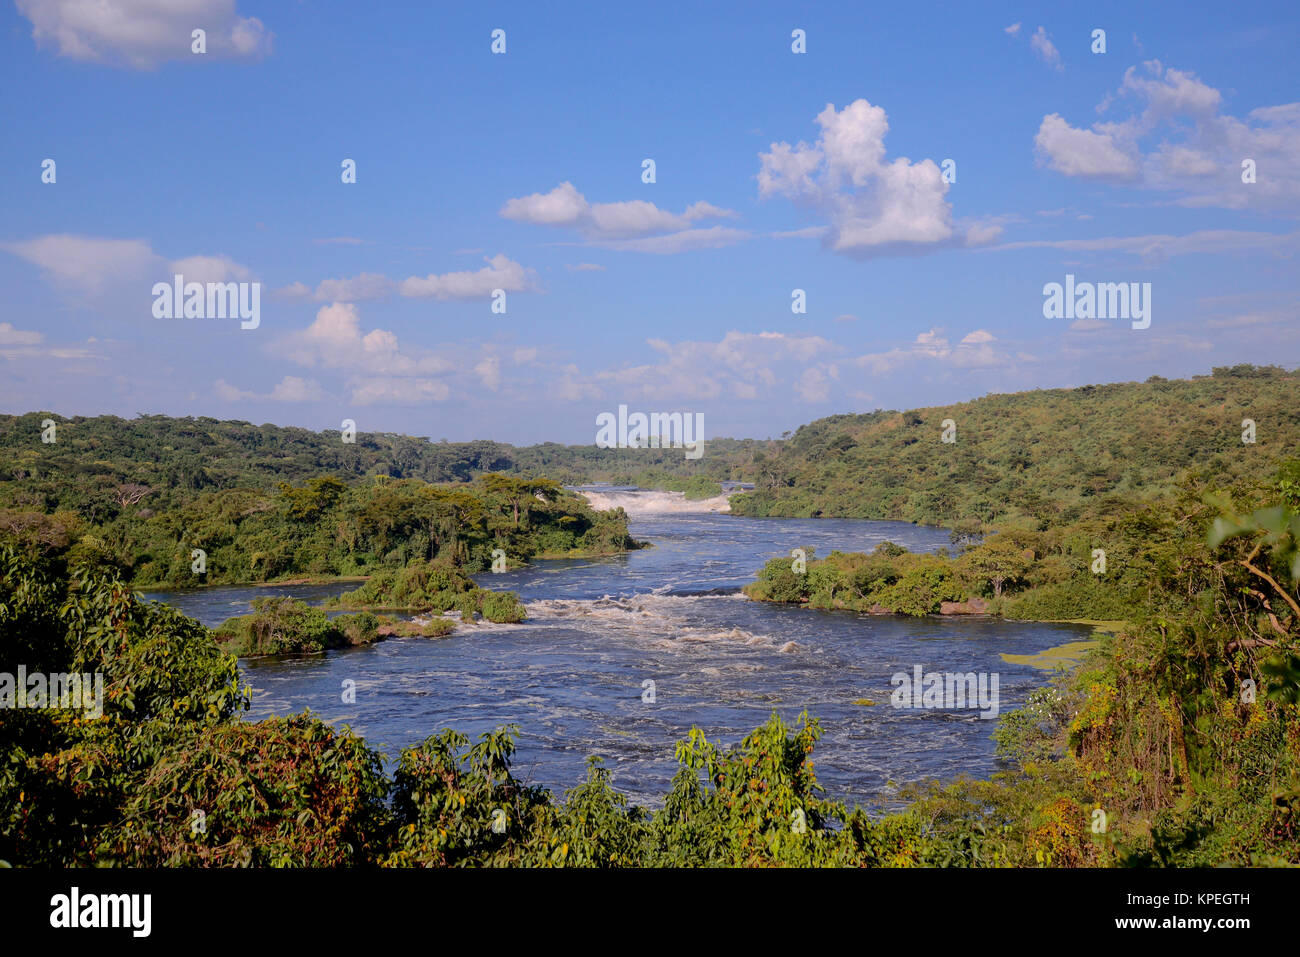 L'Ouganda est appelée la "perle de l'Afrique" à cause de ses beaux paysages, des gens accueillants, et l'abondance de pluie. Karuma Falls sur le nil Banque D'Images